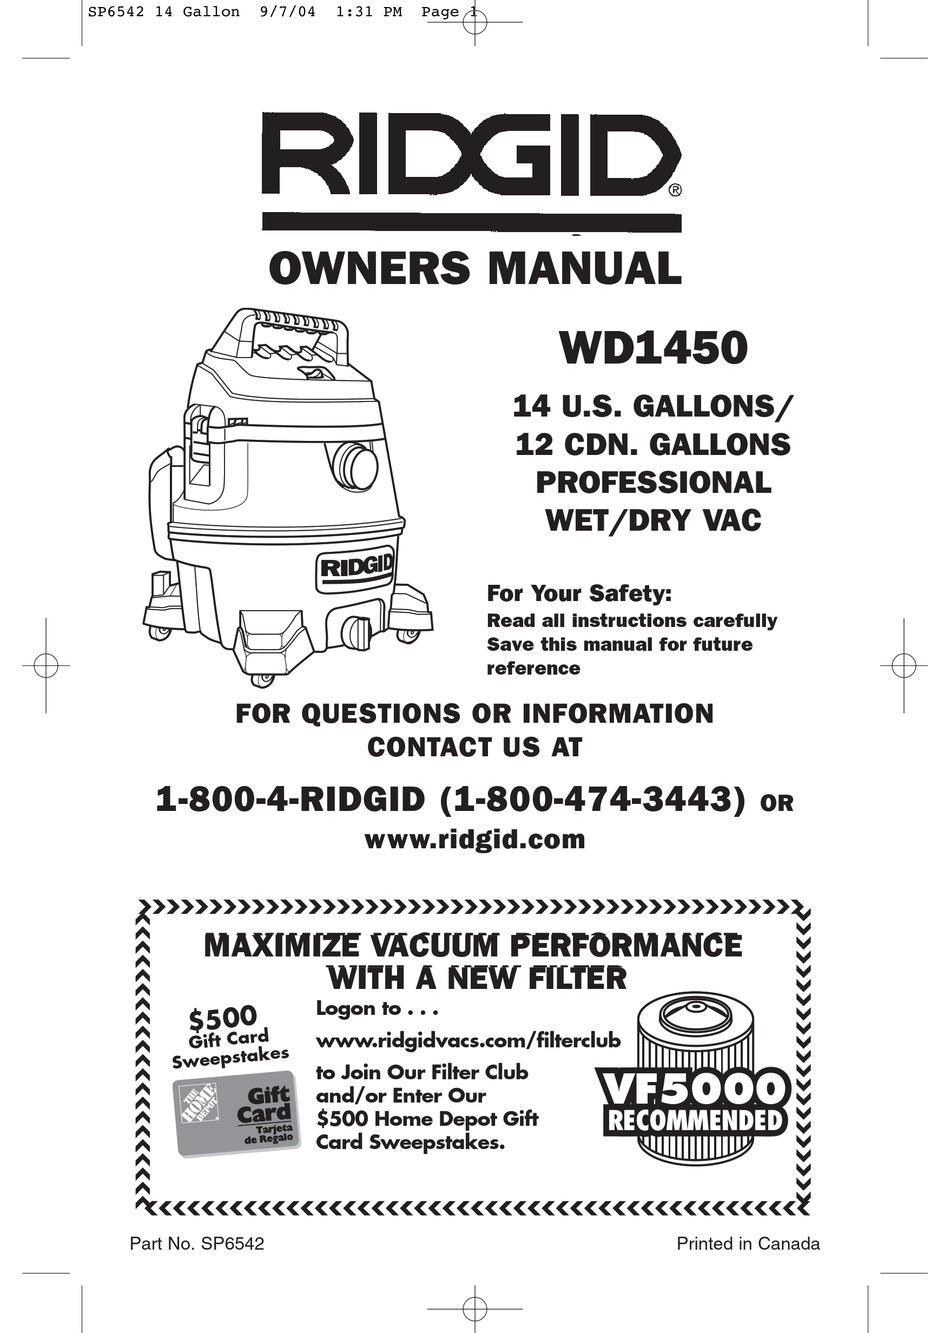 RIDGID WD1450 OWNER'S MANUAL Pdf Download | ManualsLib